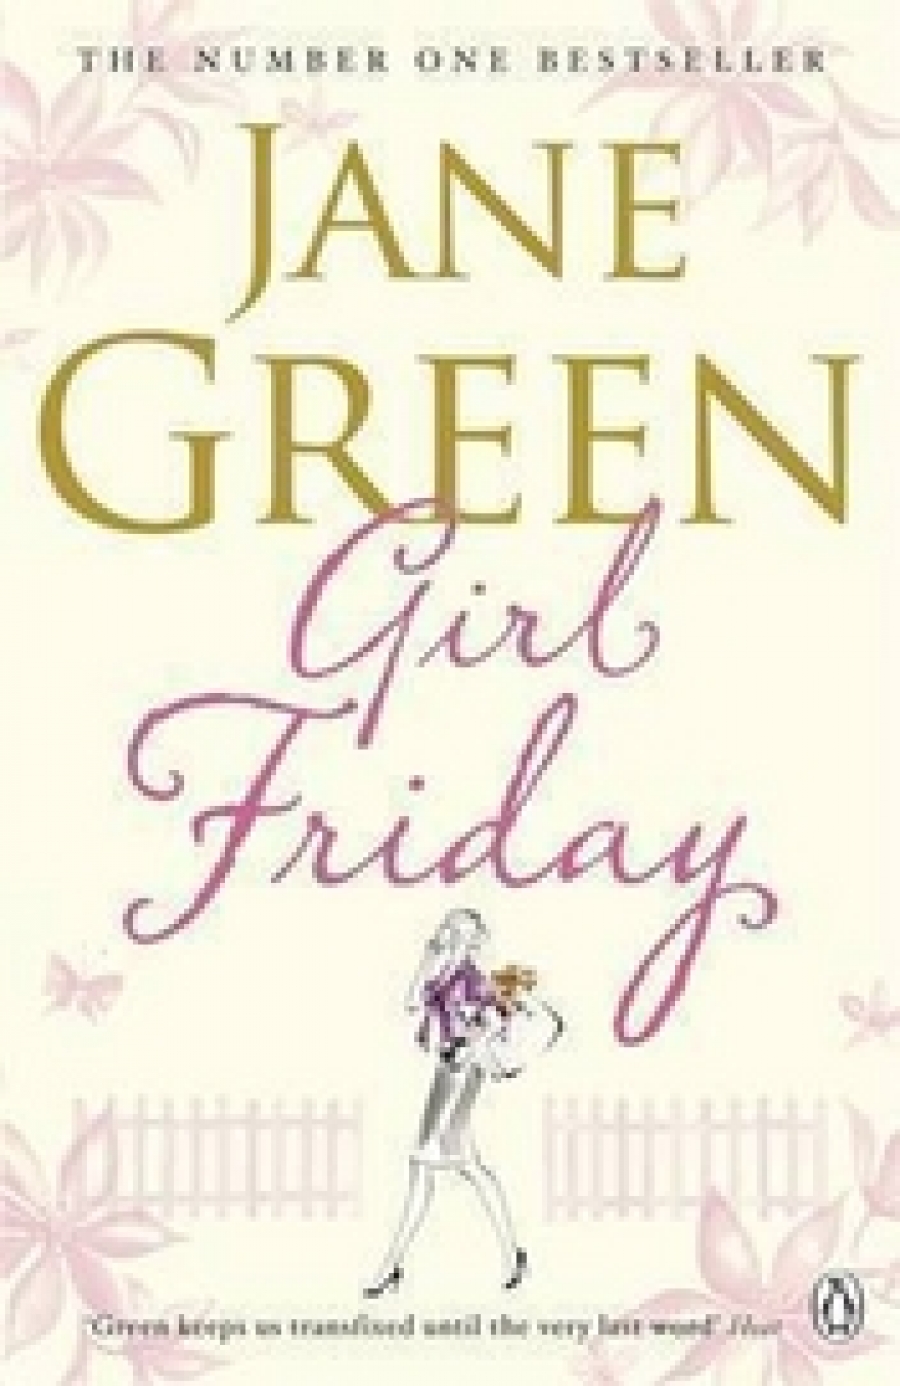 Jane Green Girl Friday 